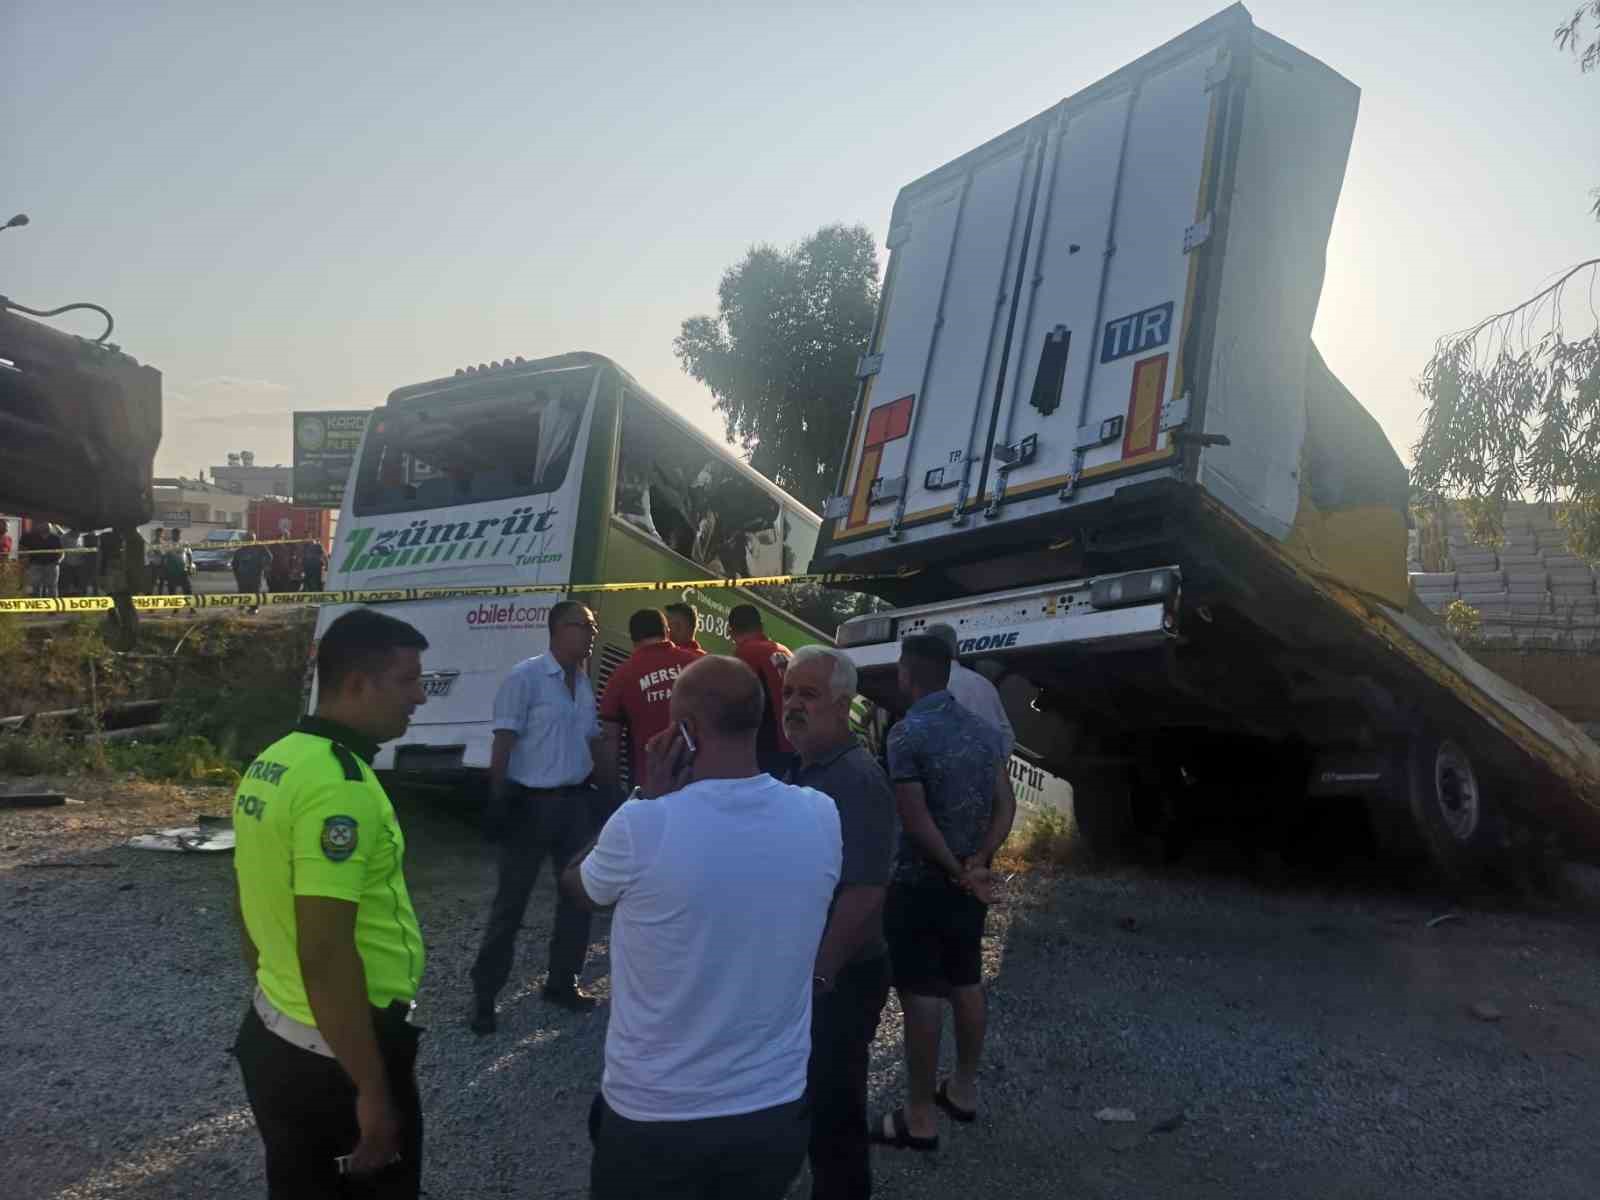 Mersin’de yolcu otobüsü önce kamyona, ardından tıra çarptı: 1 ölü, 28 yaralı